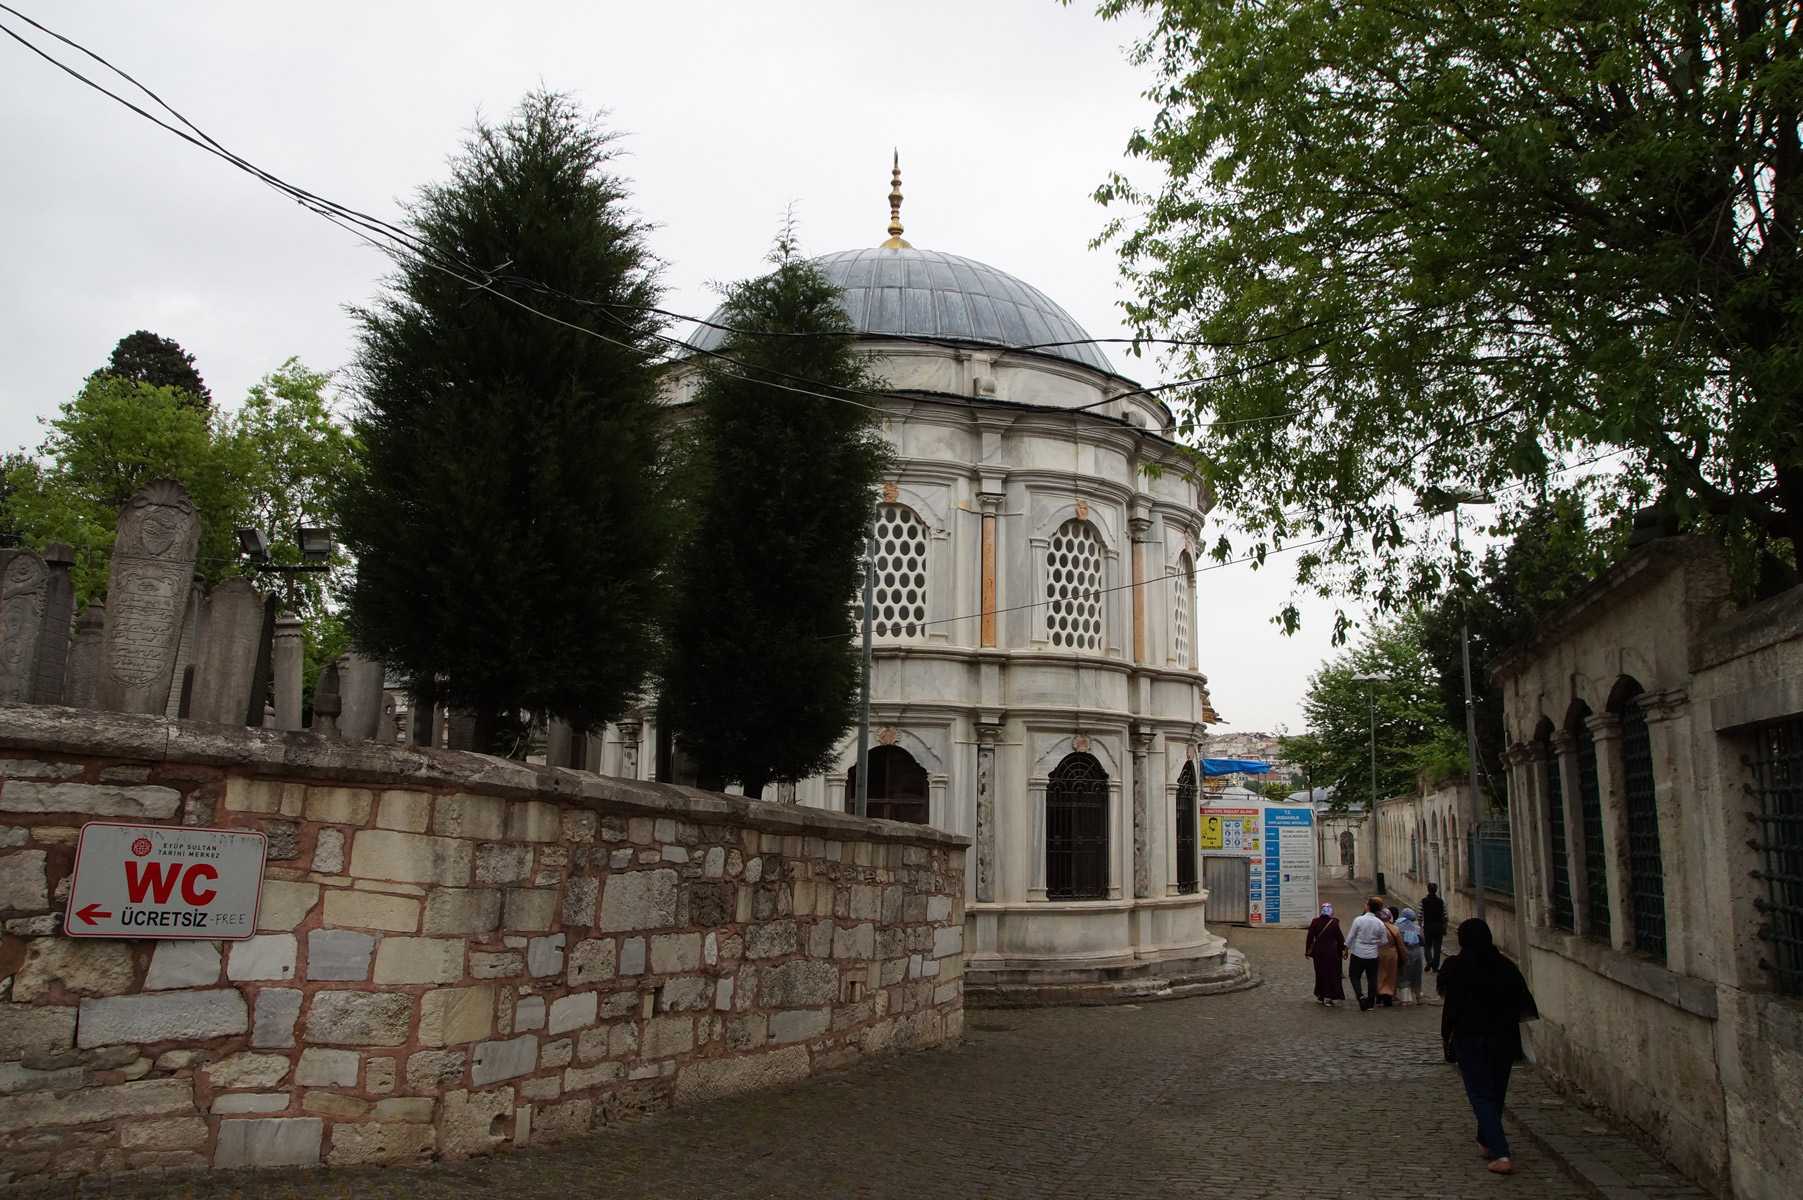 Мавзолей султана махмуда ii и 145 надгробий вокруг - самая умиротворенная достопримечательность стамбула! - turk.expert